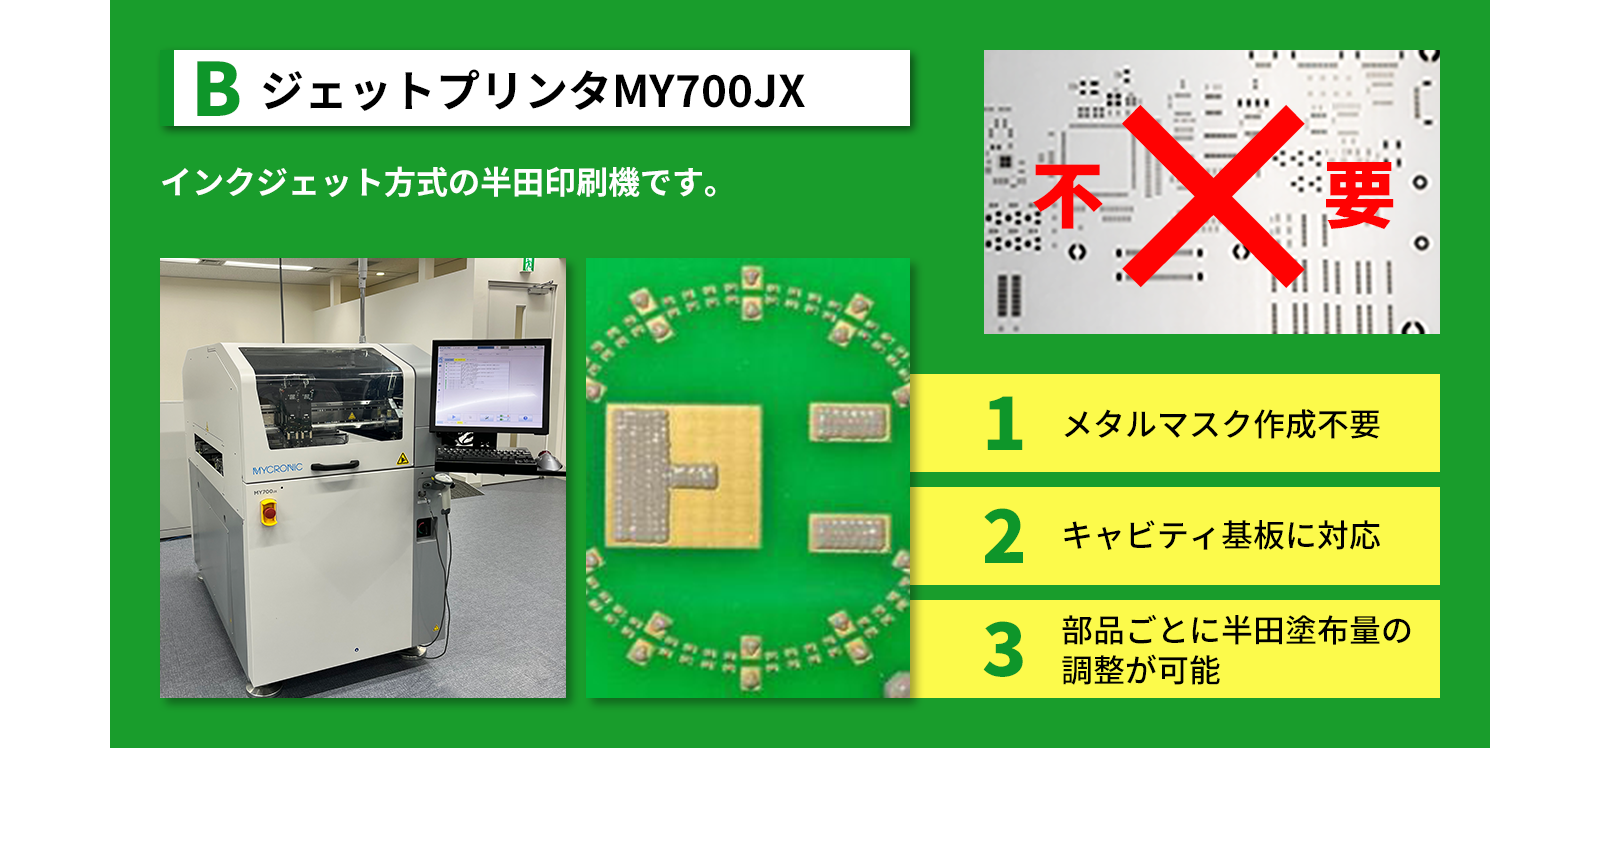 ジェットプリンタMY700JX - インクジェット方式の半田印刷機です。メタルマスク作成不要。キャビティ基板に対応。部品ごとに半田塗布量の調整が可能。